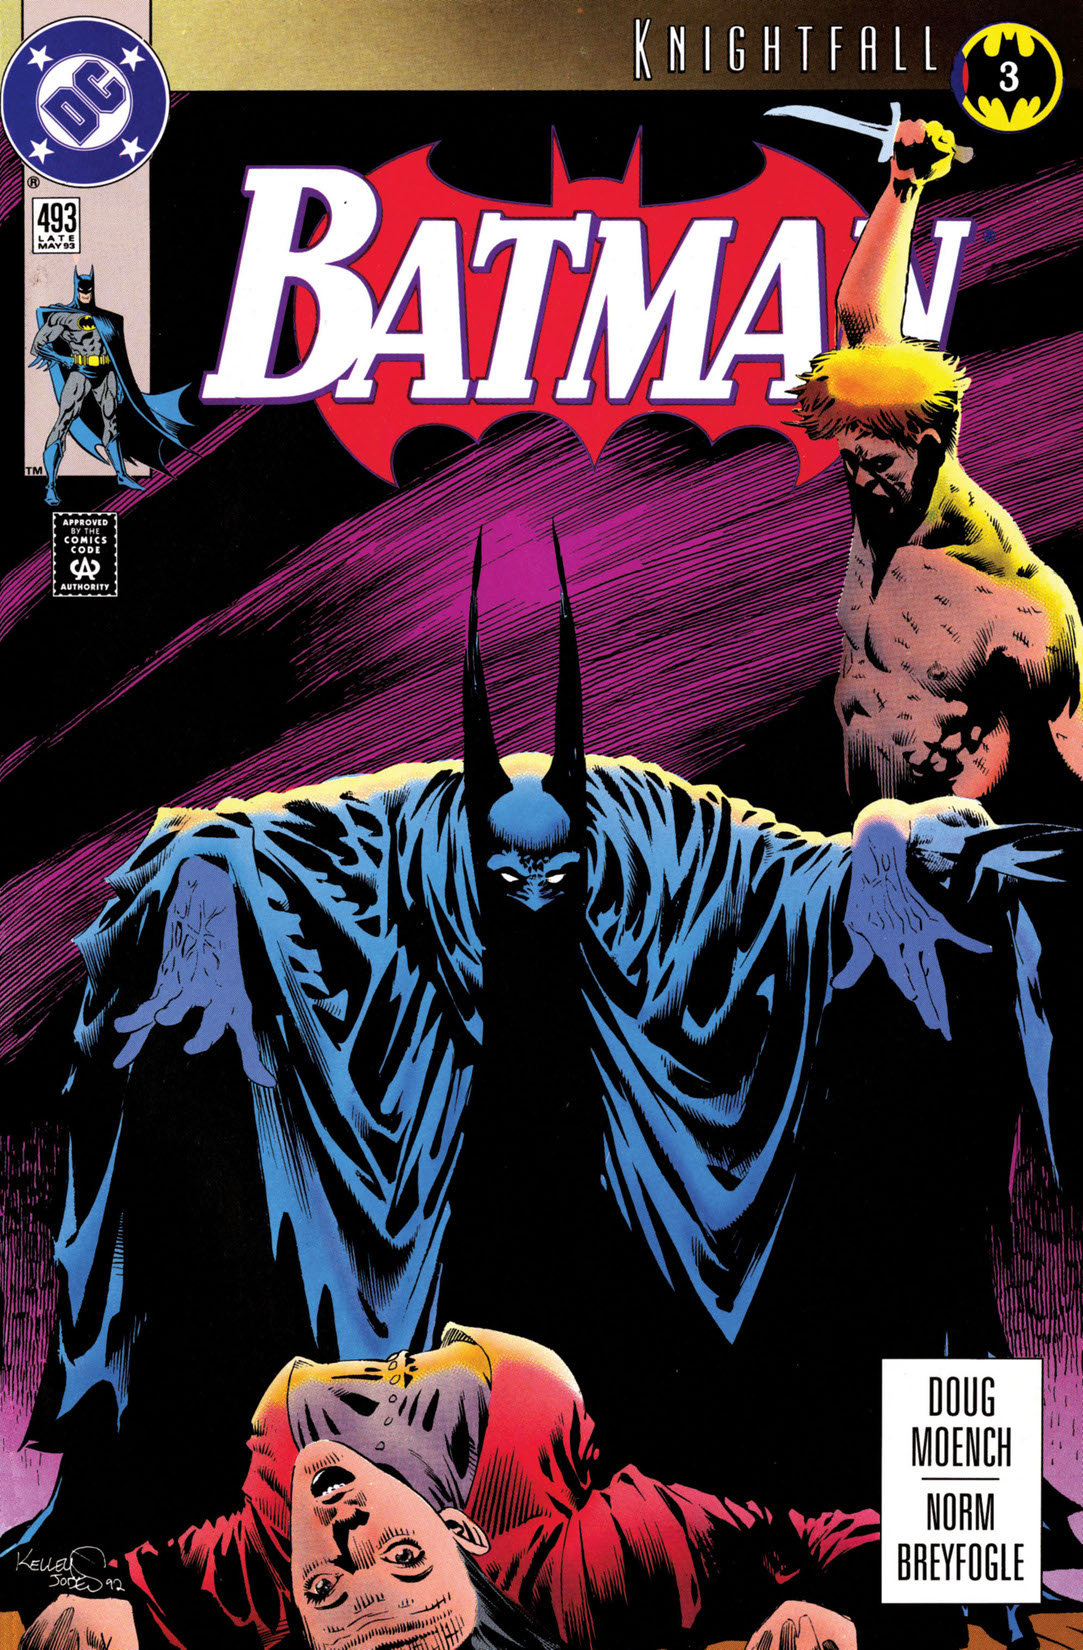 Batman (1940-) #493 preview images